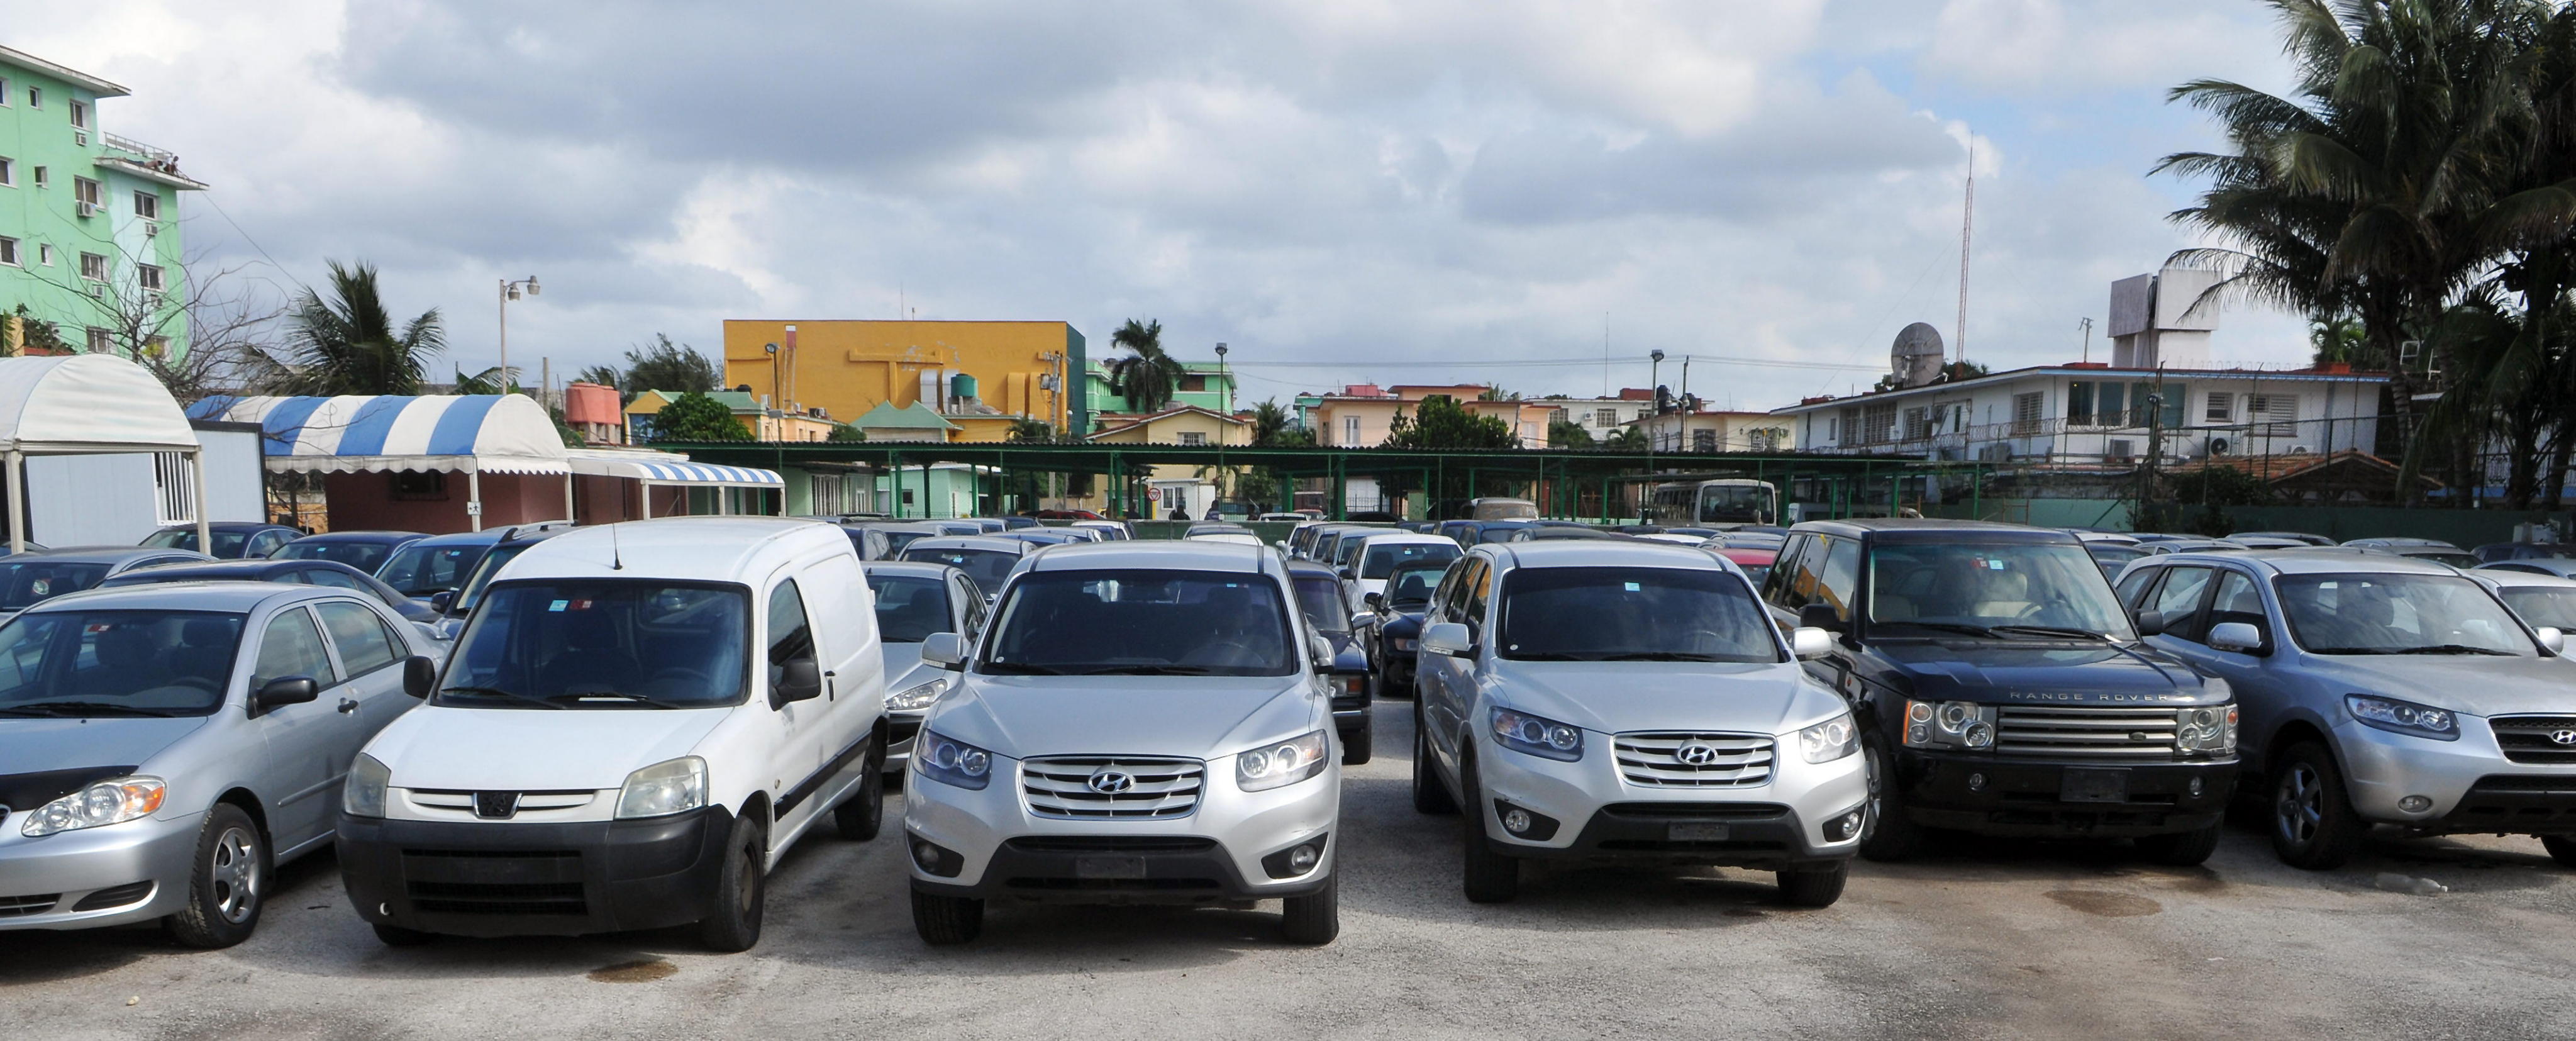 Comercializadoras extranjeras evaden al SAT en importación de autos usados